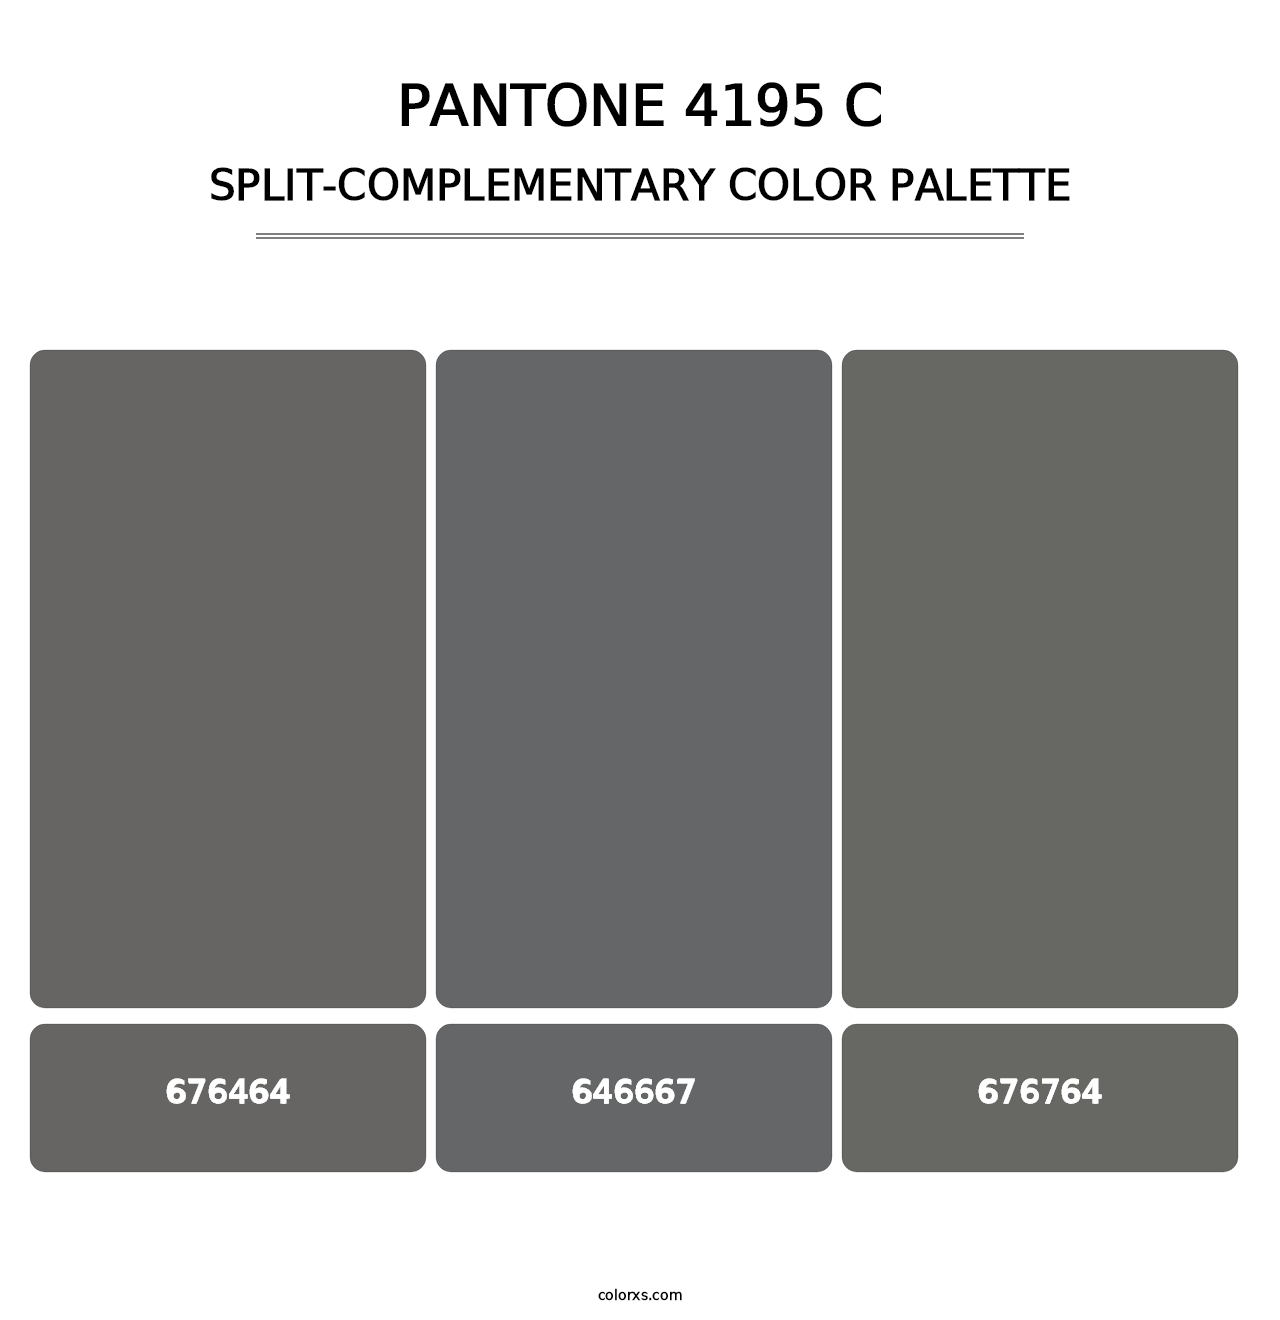 PANTONE 4195 C - Split-Complementary Color Palette